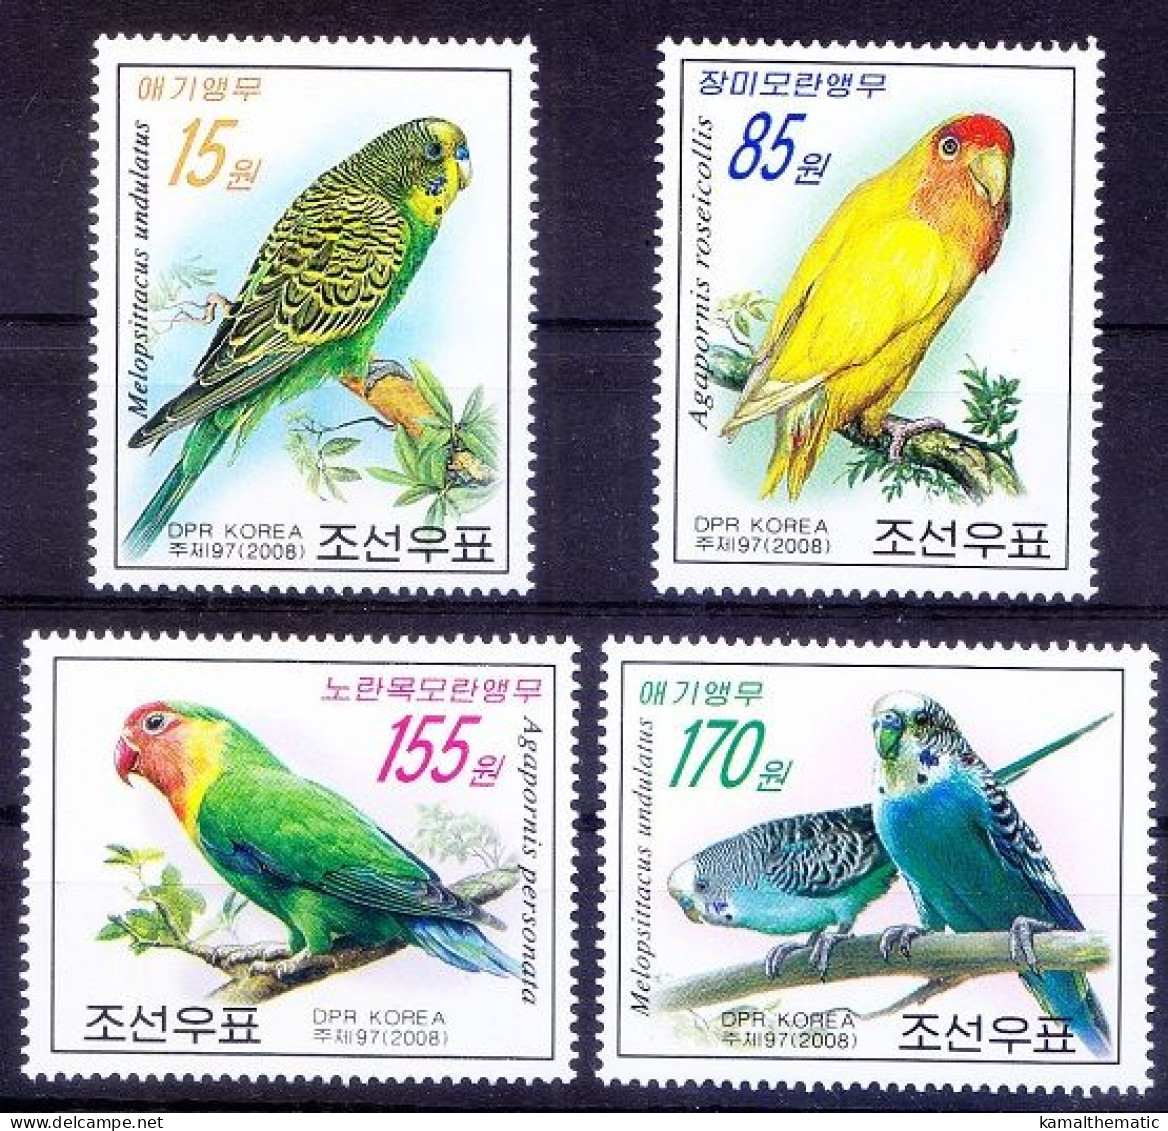 Parrots, Birds, Korea 2008 MNH 4v - Papagayos